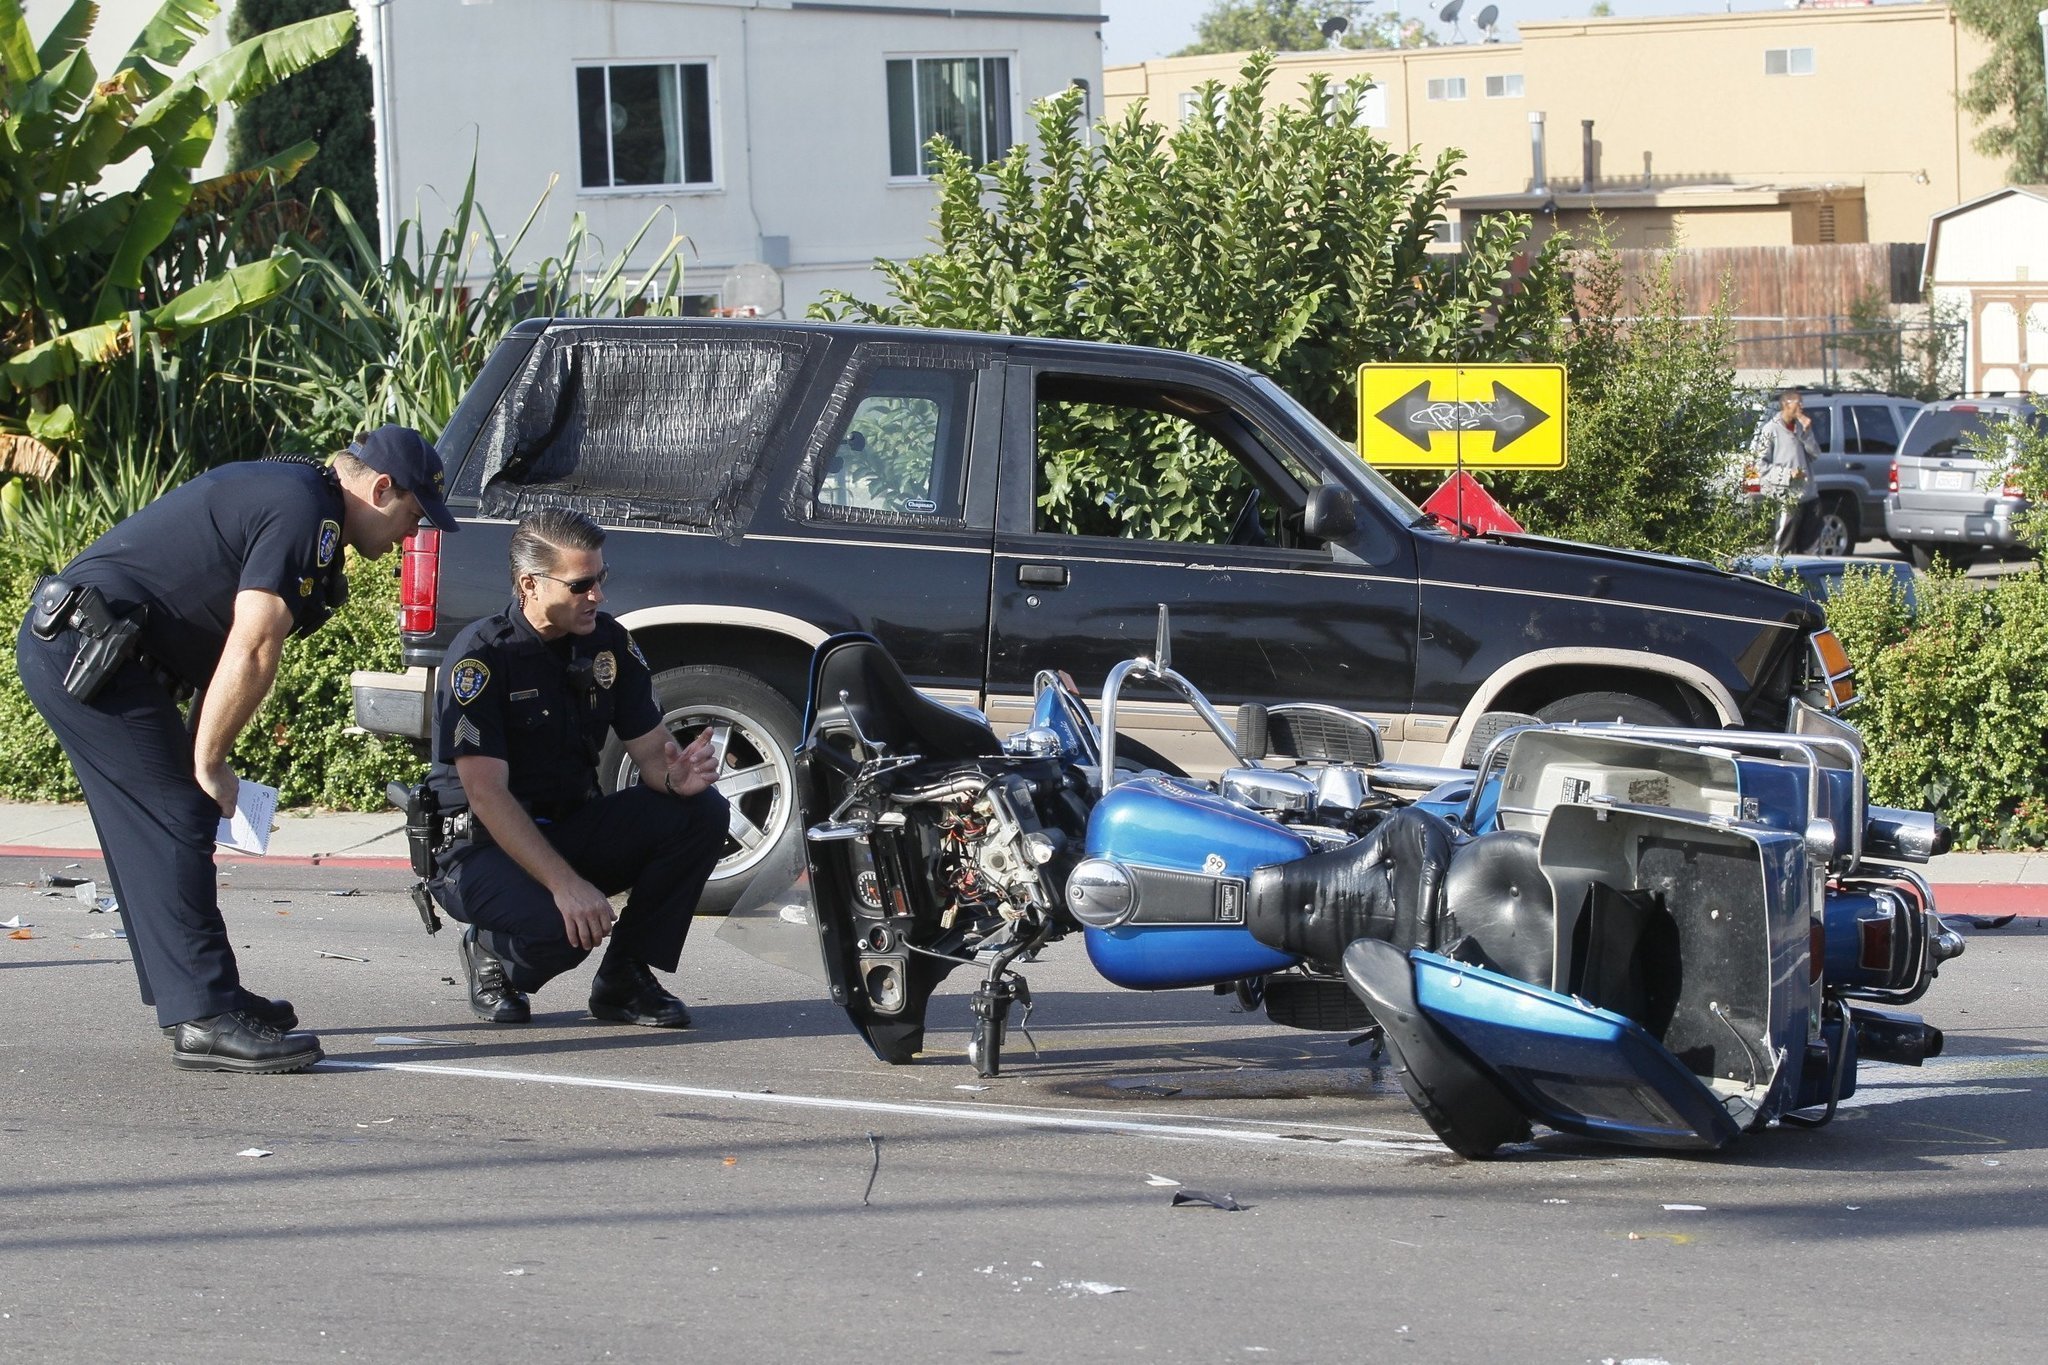 Fatal motorcycle crash in El Cerrito - The San Diego Union-Tribune